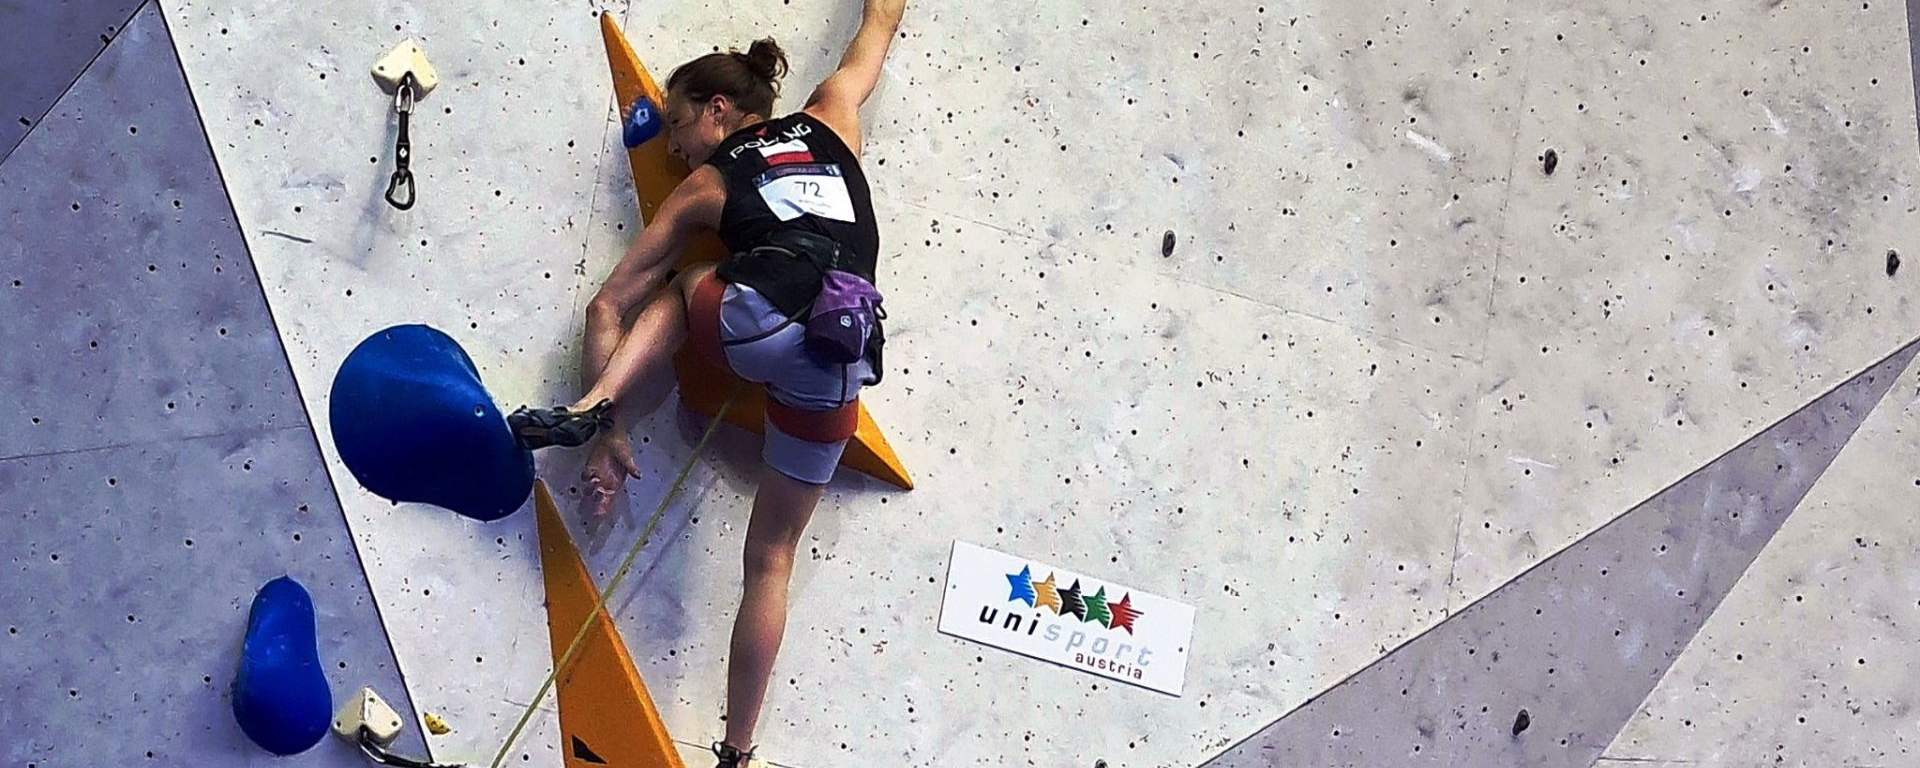 Ida Klupś na Akademickich Mistrzostwach Świata w Innsbrucku